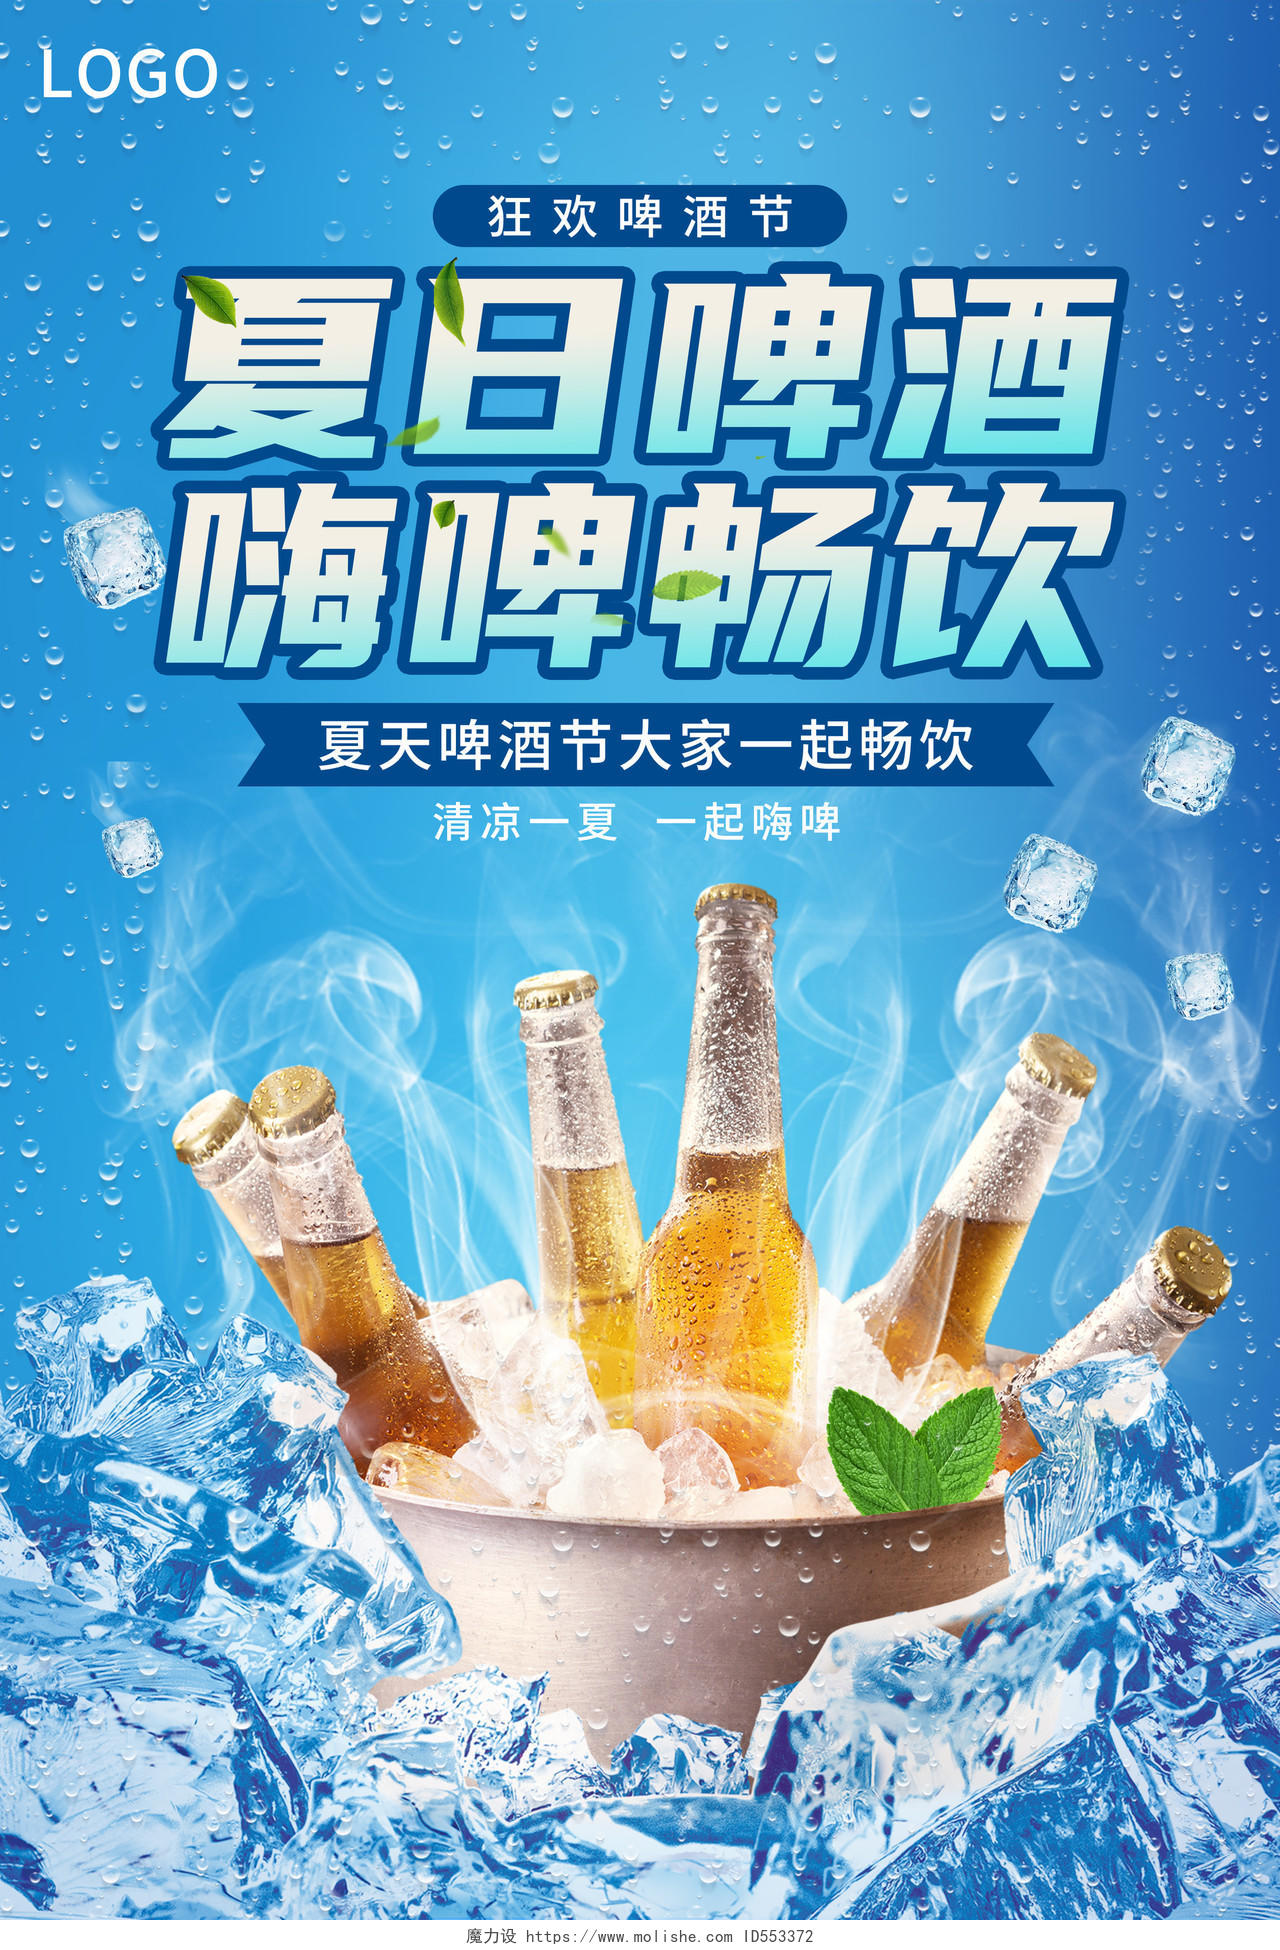 简约风创意夏日啤酒节宣传海报